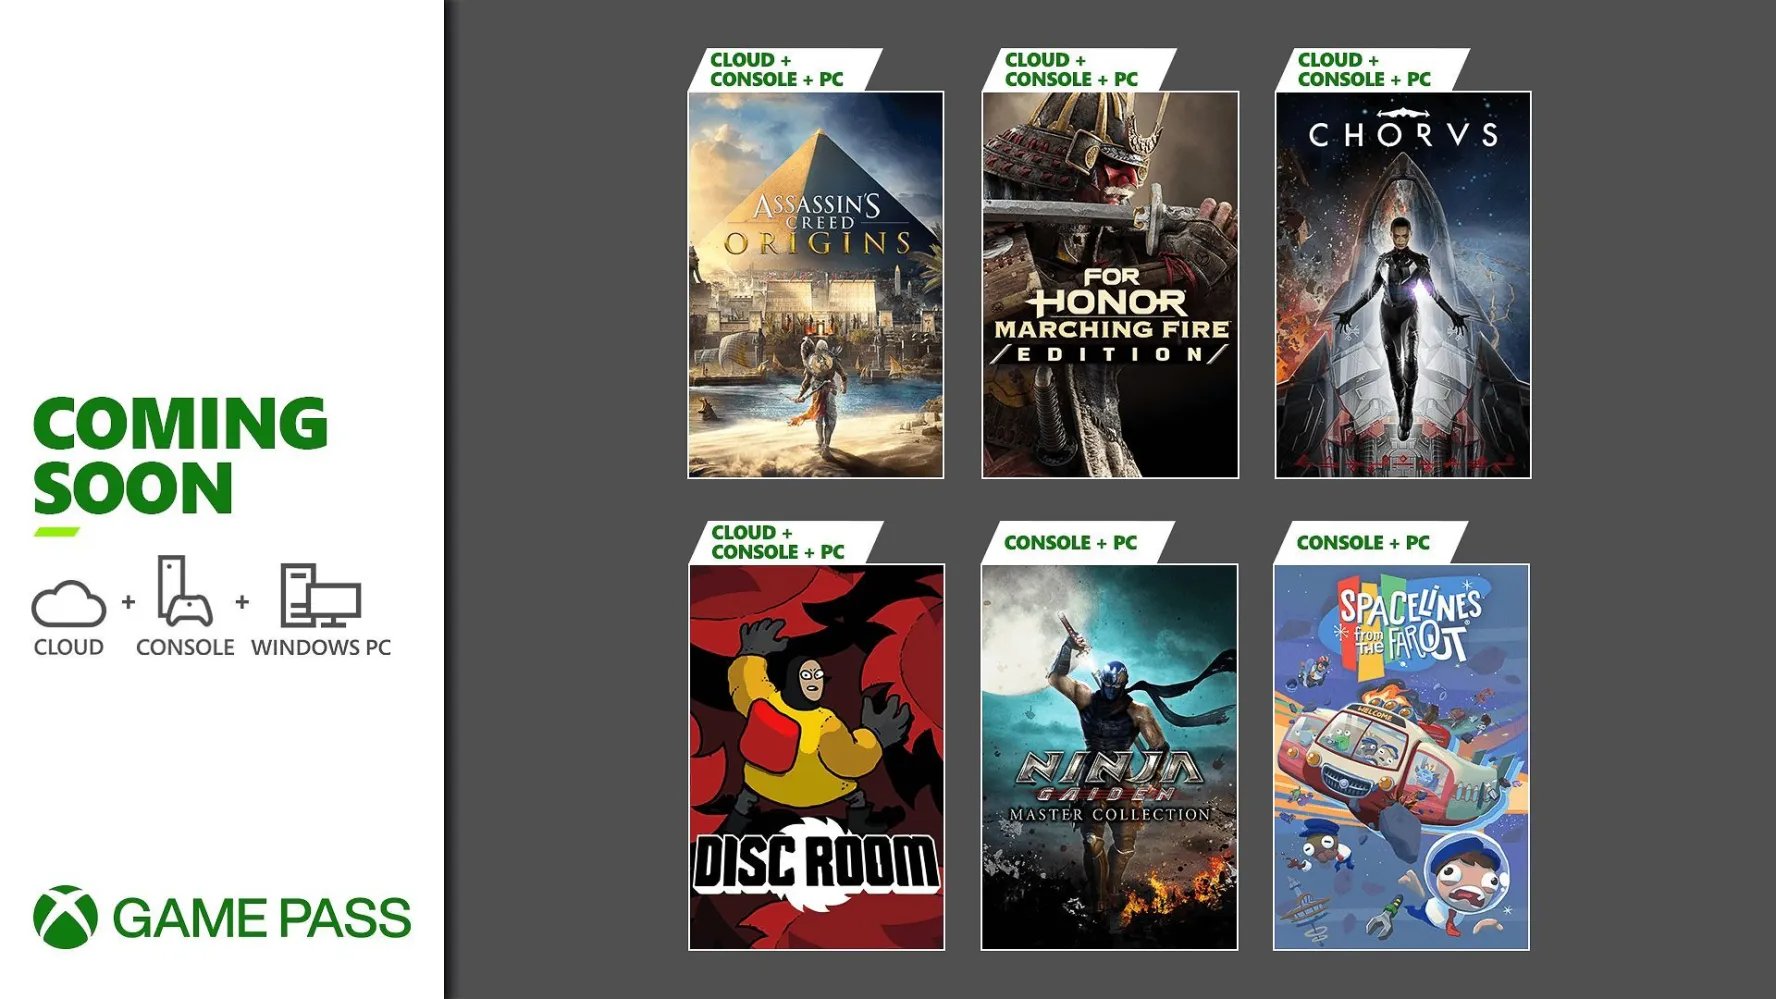 Xbox Game Pass: Cơ hội trải nghiệm hàng trăm trò chơi đỉnh cao chỉ với một khoản phí thấp nhất? Xbox Game Pass là lựa chọn hoàn hảo của bạn! Tận hưởng tất cả các game hot nhất đến từ Microsoft và nhiều nhà phát triển hàng đầu thế giới.